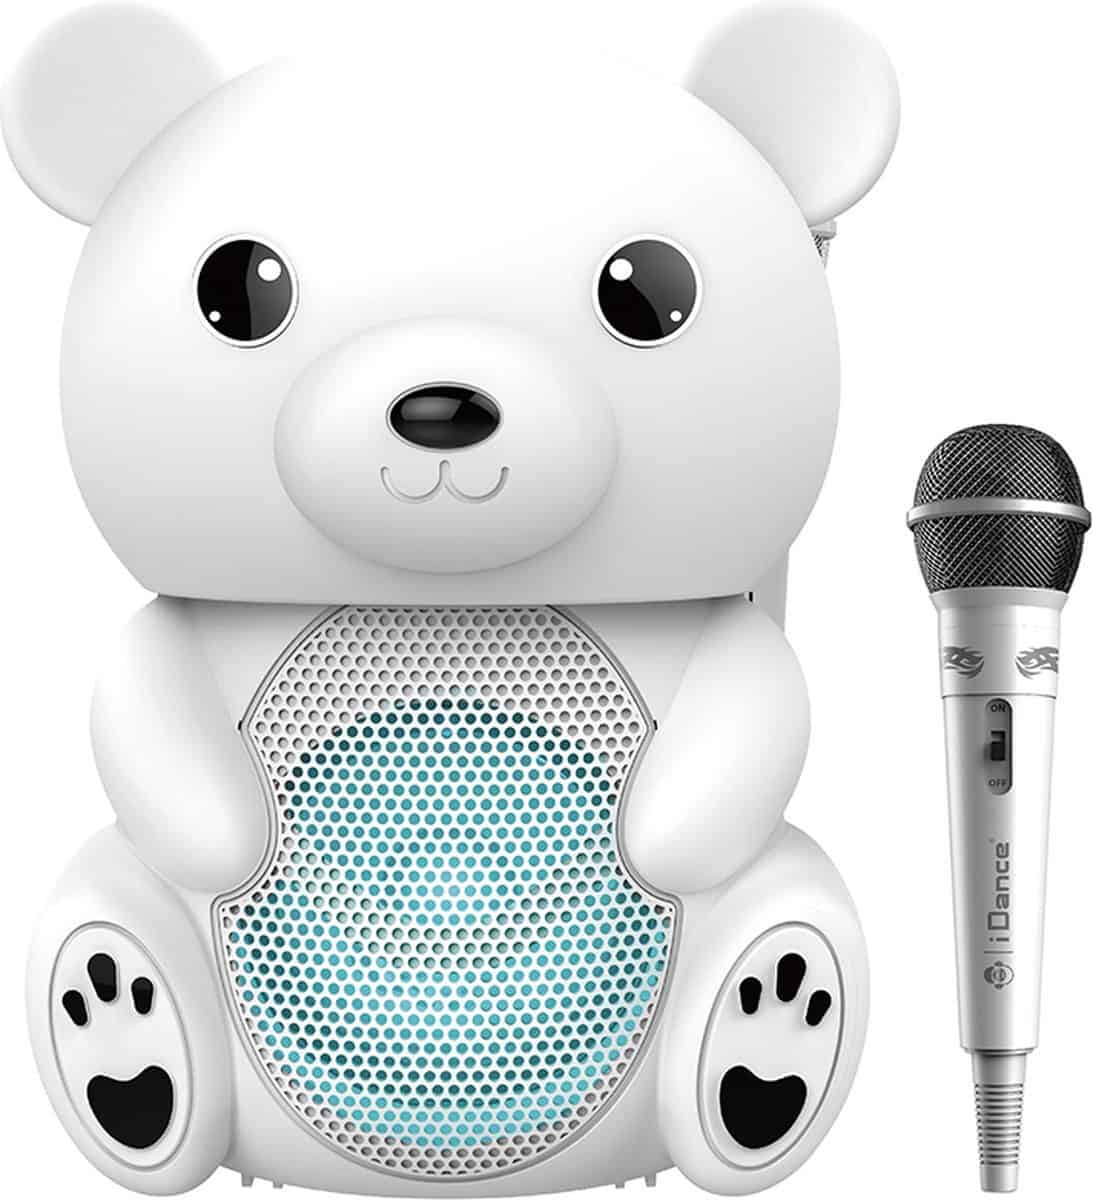 Mejor set de karaoke 4 años - iDance Funky Bear Party Speaker